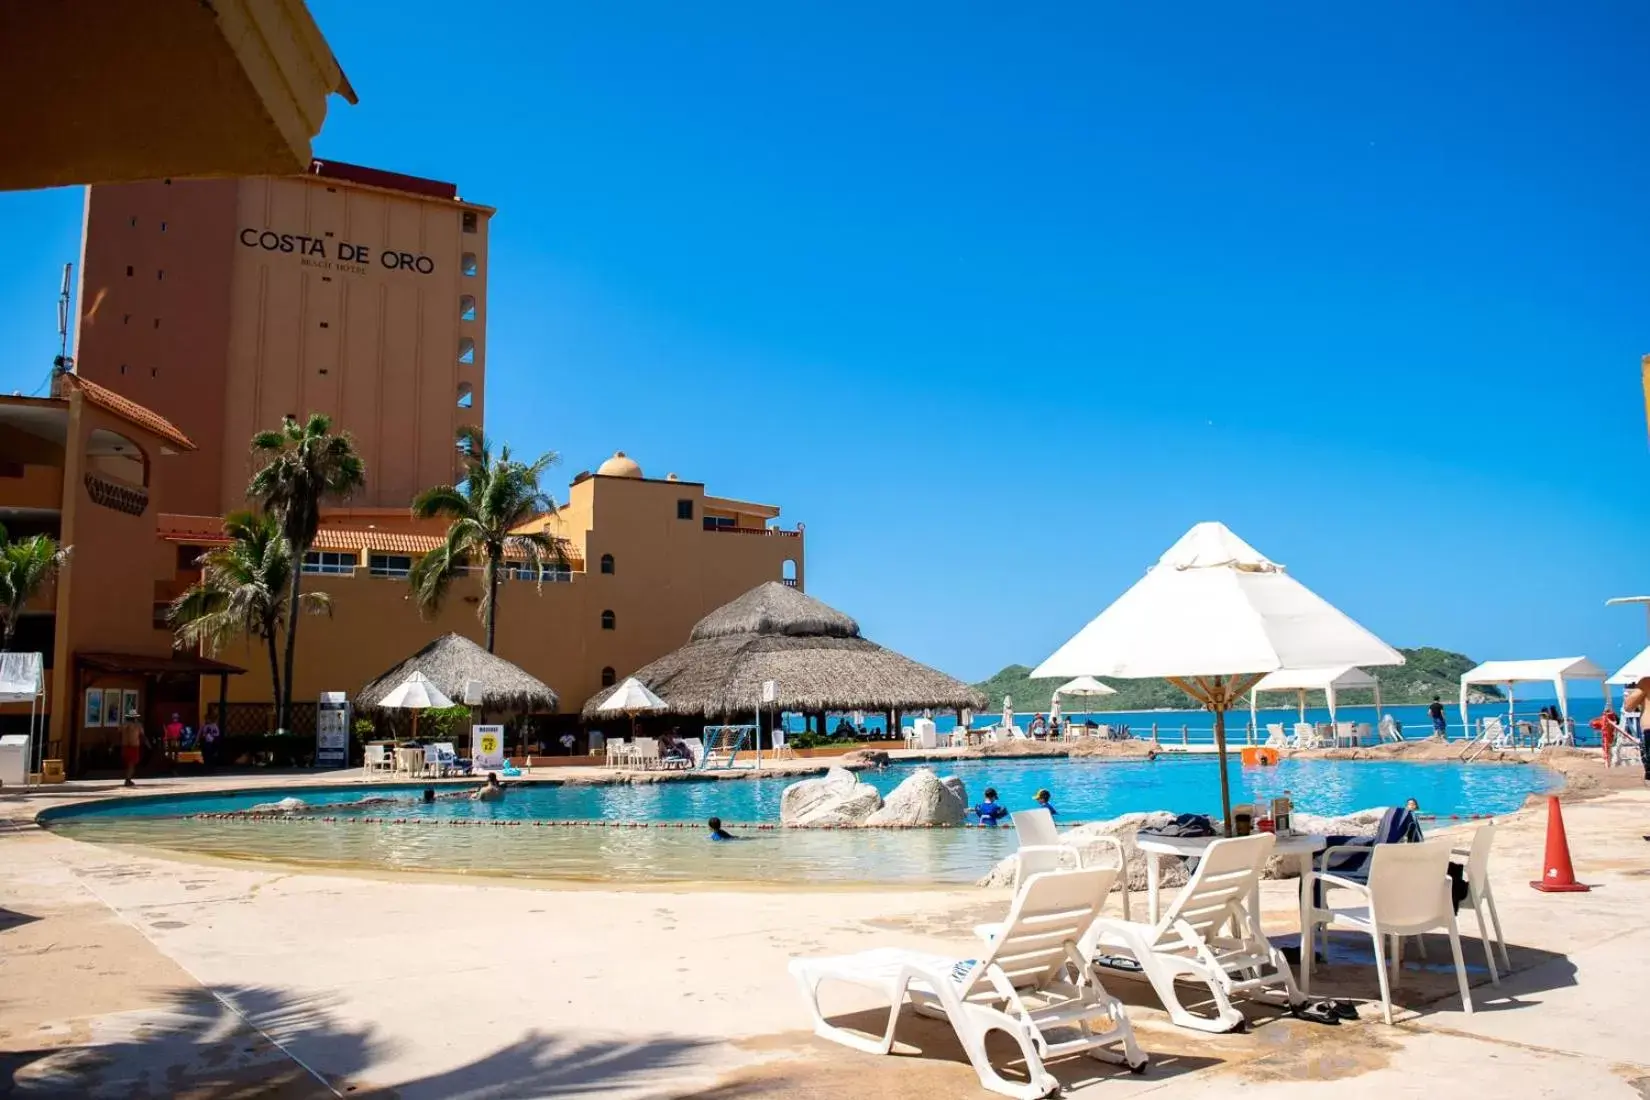 Swimming Pool in Costa de Oro Beach Hotel